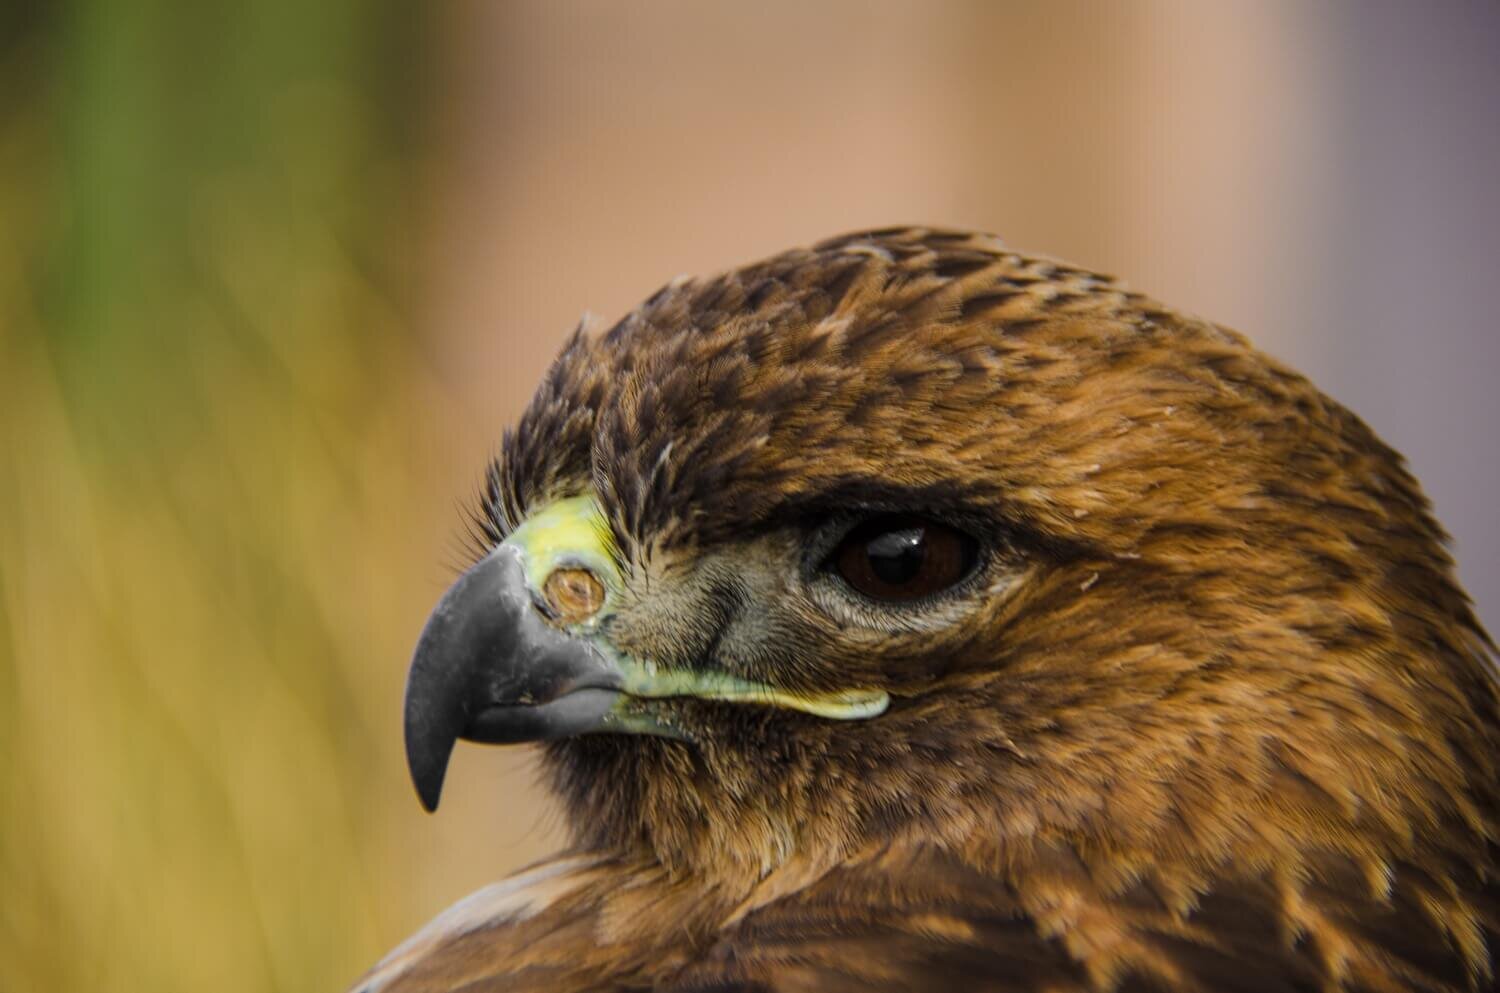 Águila real en la reserva de la biosfera El Pinacate, Sonora. Billete de 200 pesos familia G, México. Desierto de Sonora.